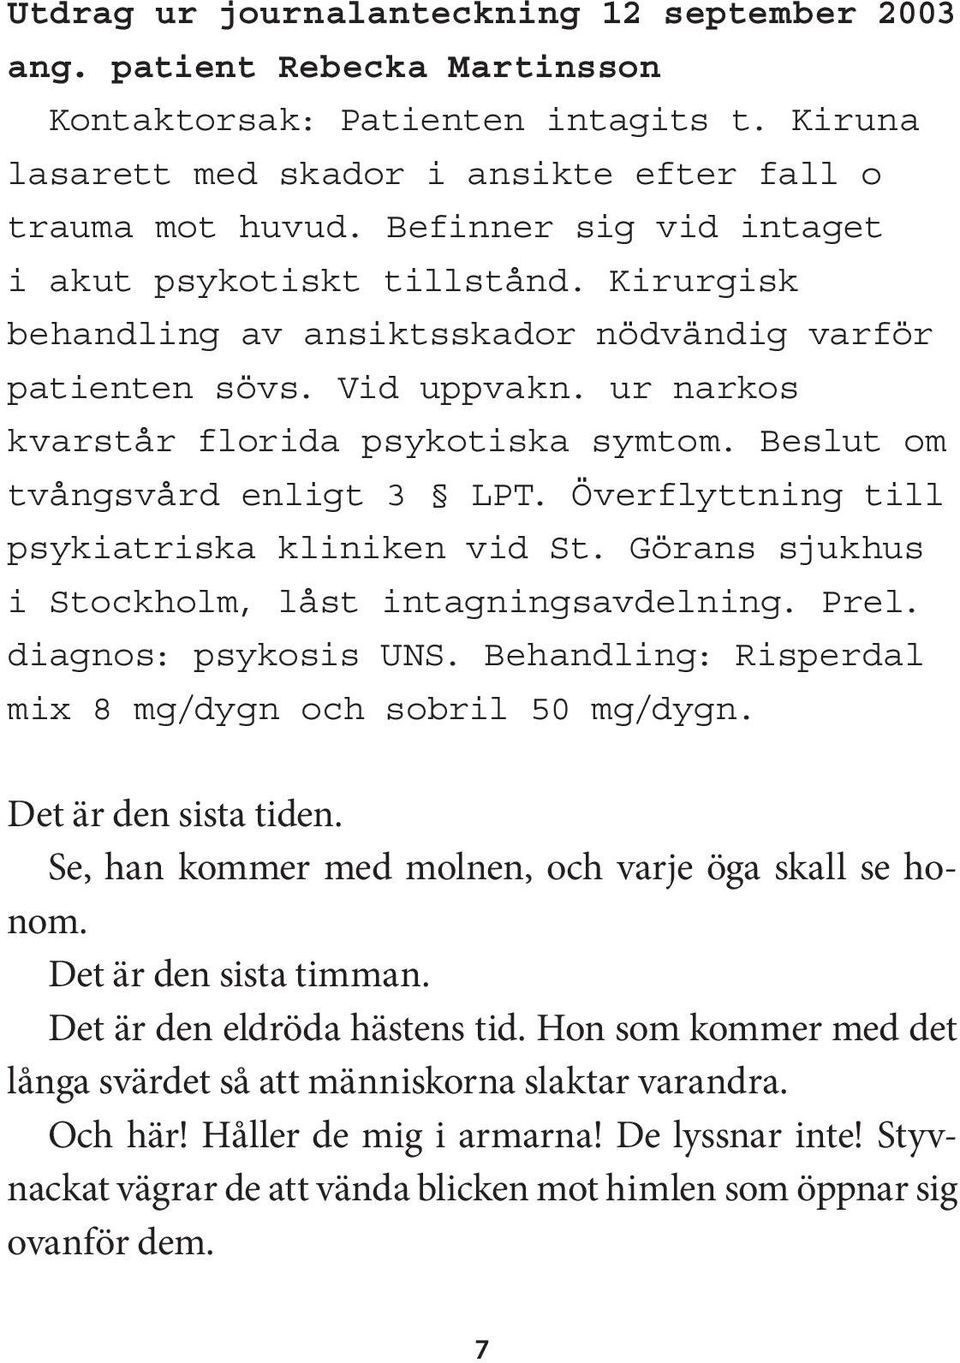 Beslut om tvångsvård enligt 3 LPT. Överflyttning till psykiatriska kliniken vid St. Görans sjukhus i Stockholm, låst intagningsavdelning. Prel. diagnos: psykosis UNS.